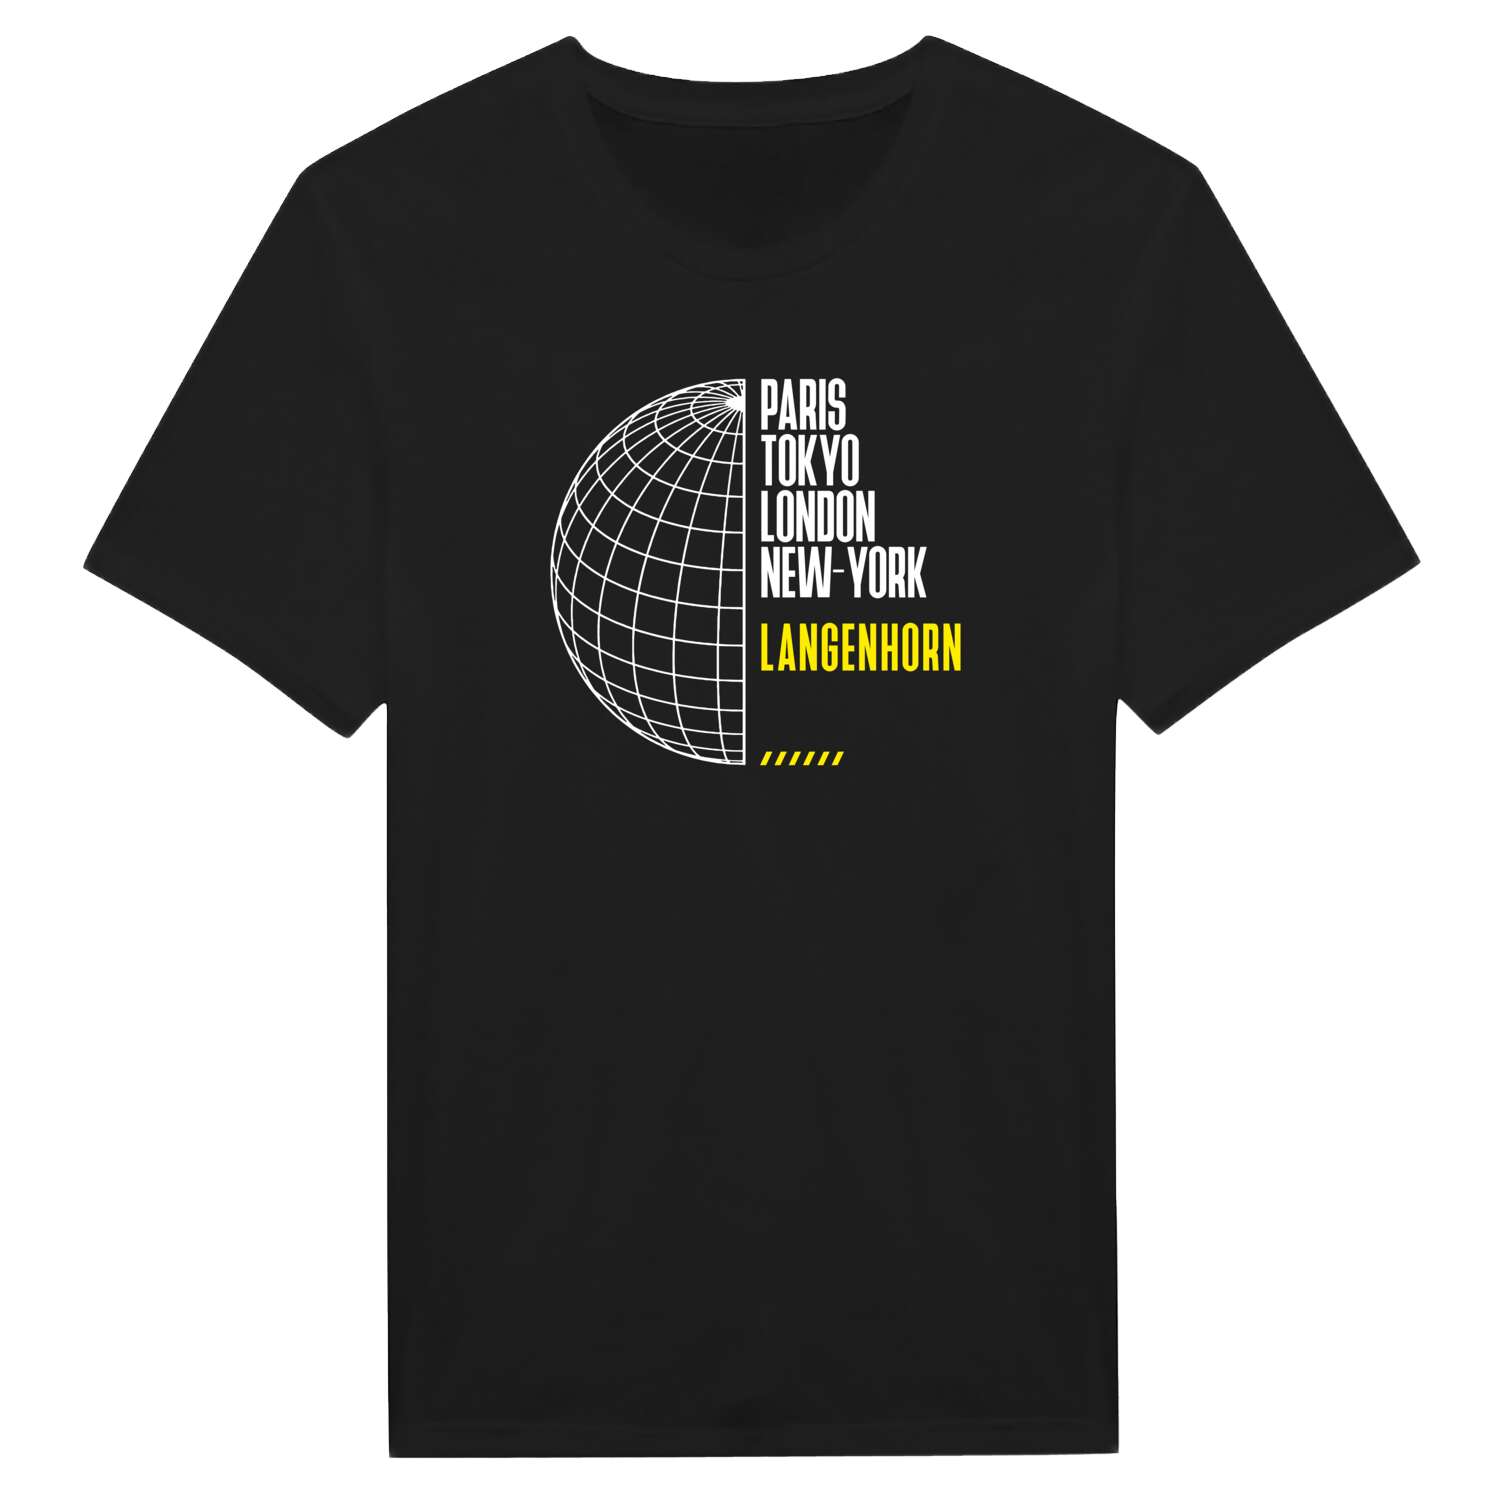 Langenhorn T-Shirt »Paris Tokyo London«